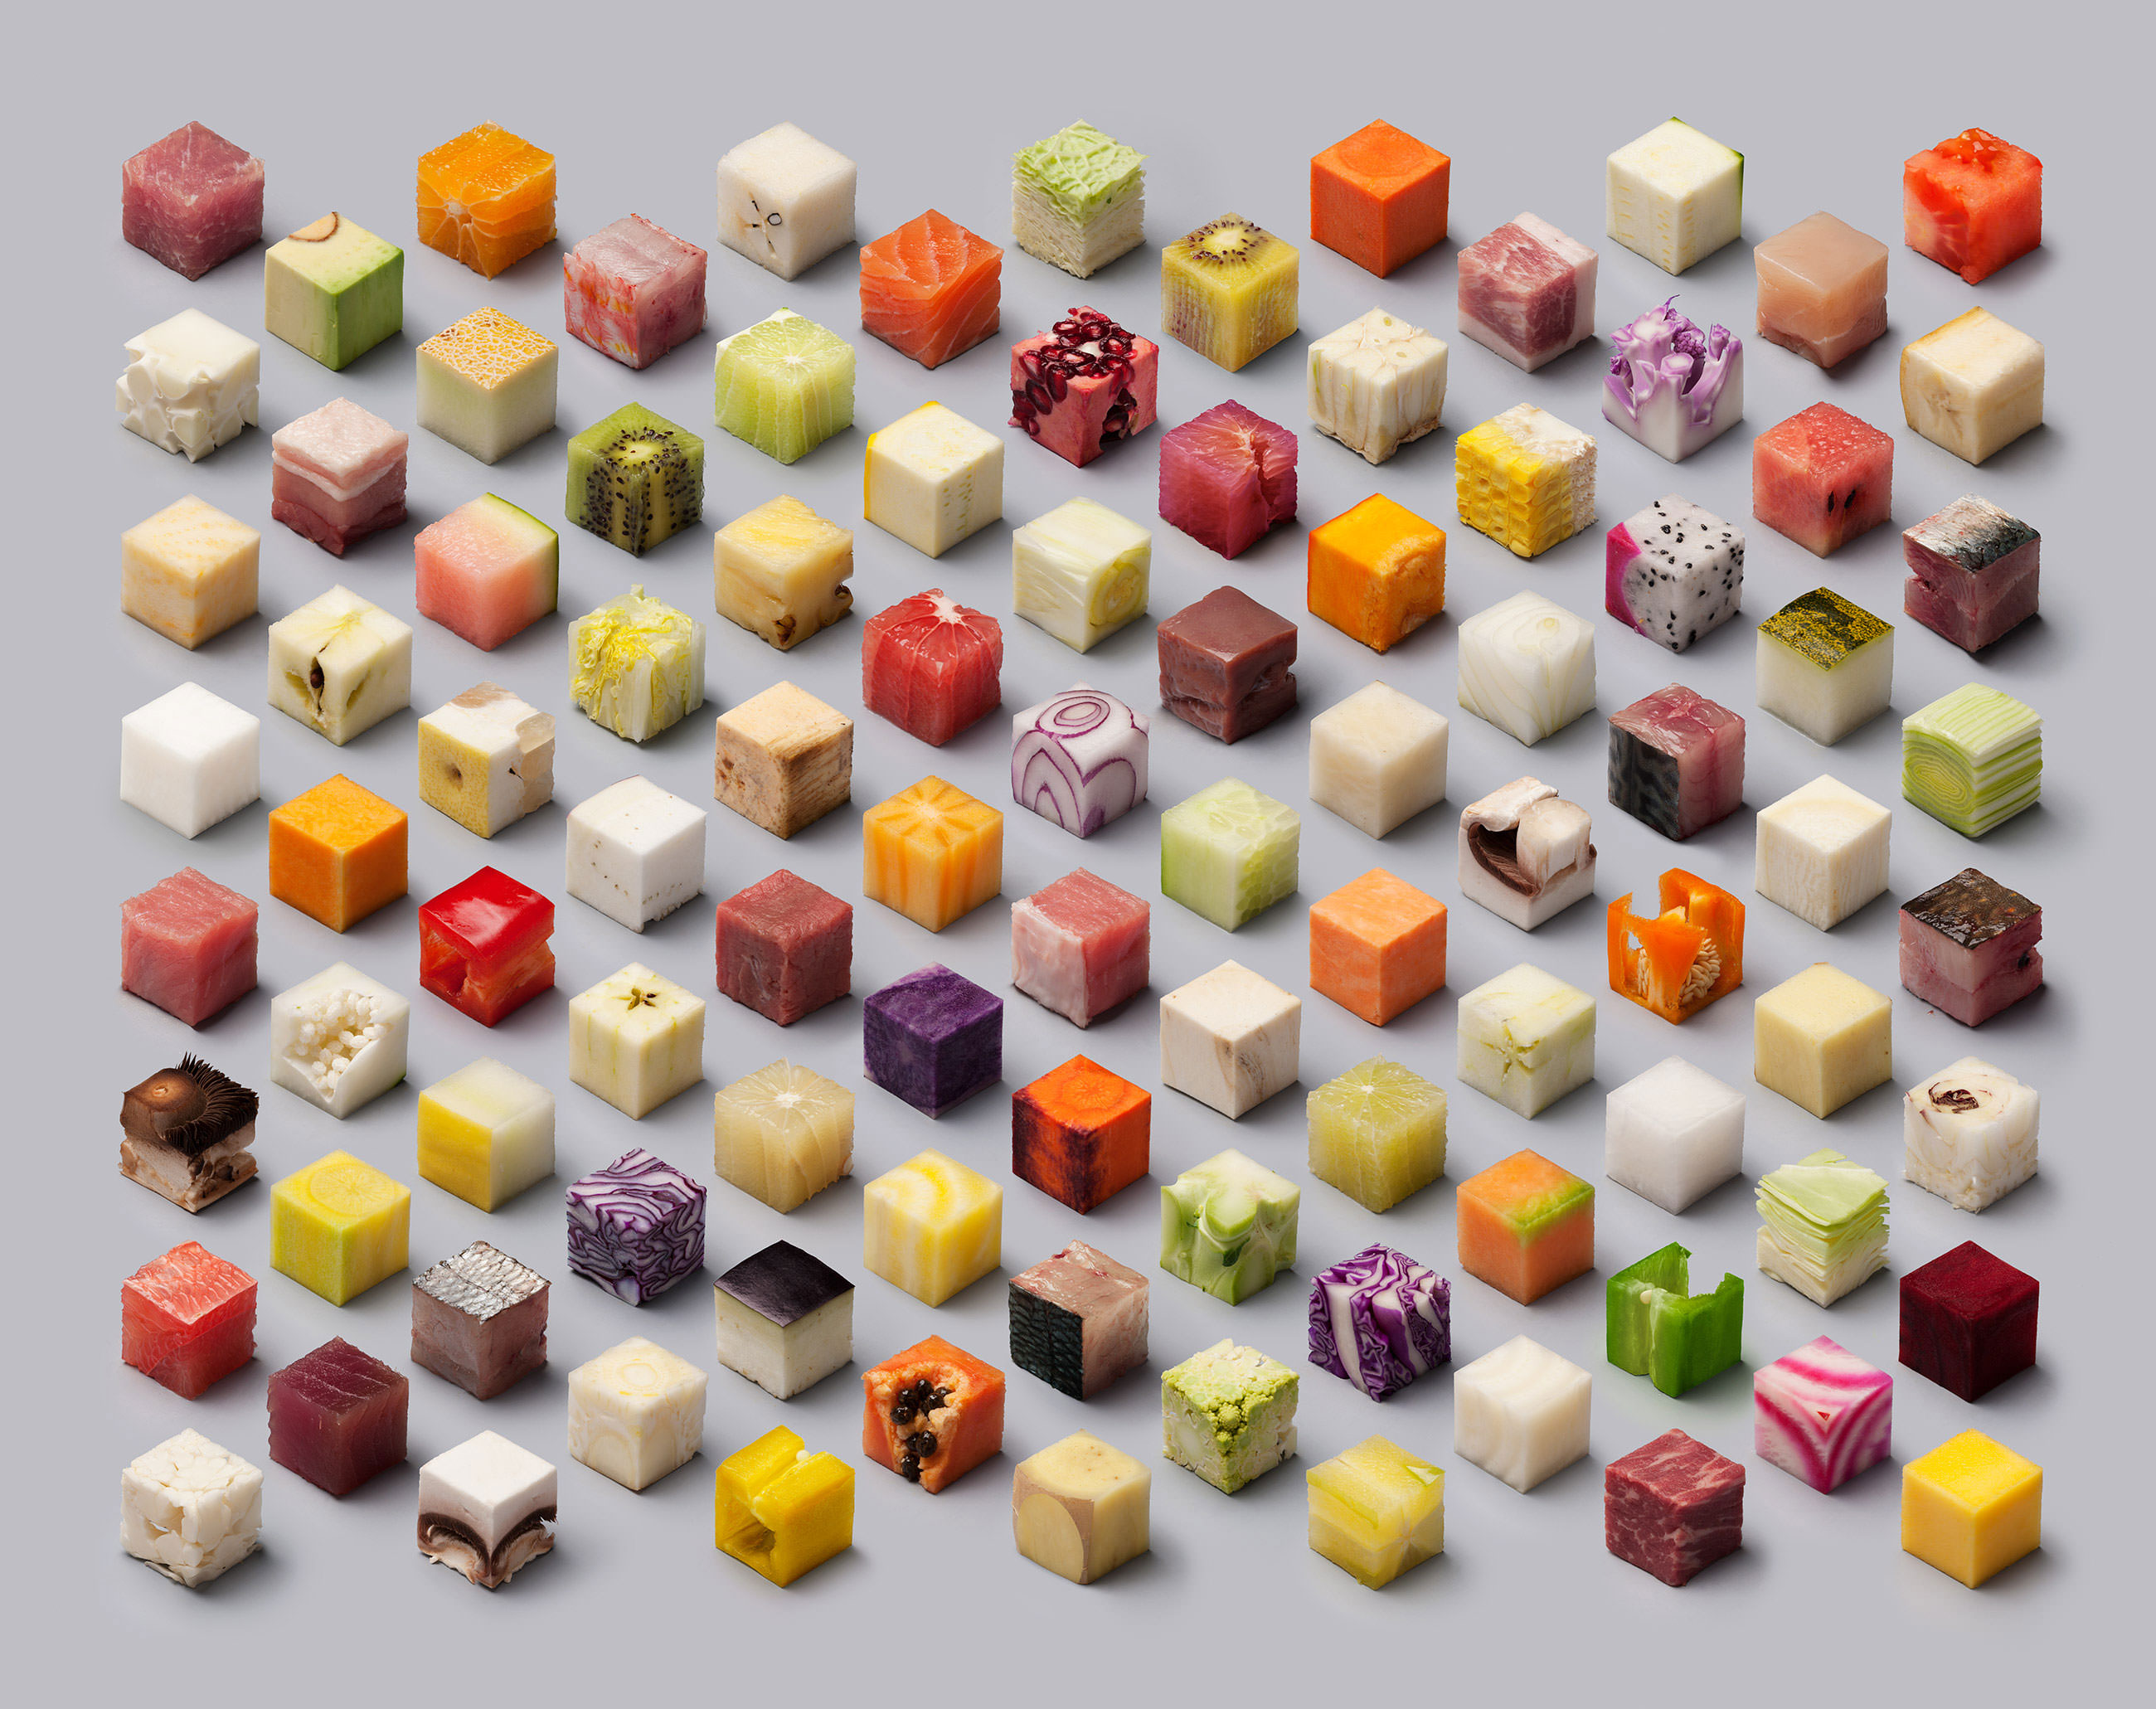 food-cubes-raw-lernert-sander-volkskrant-full-size